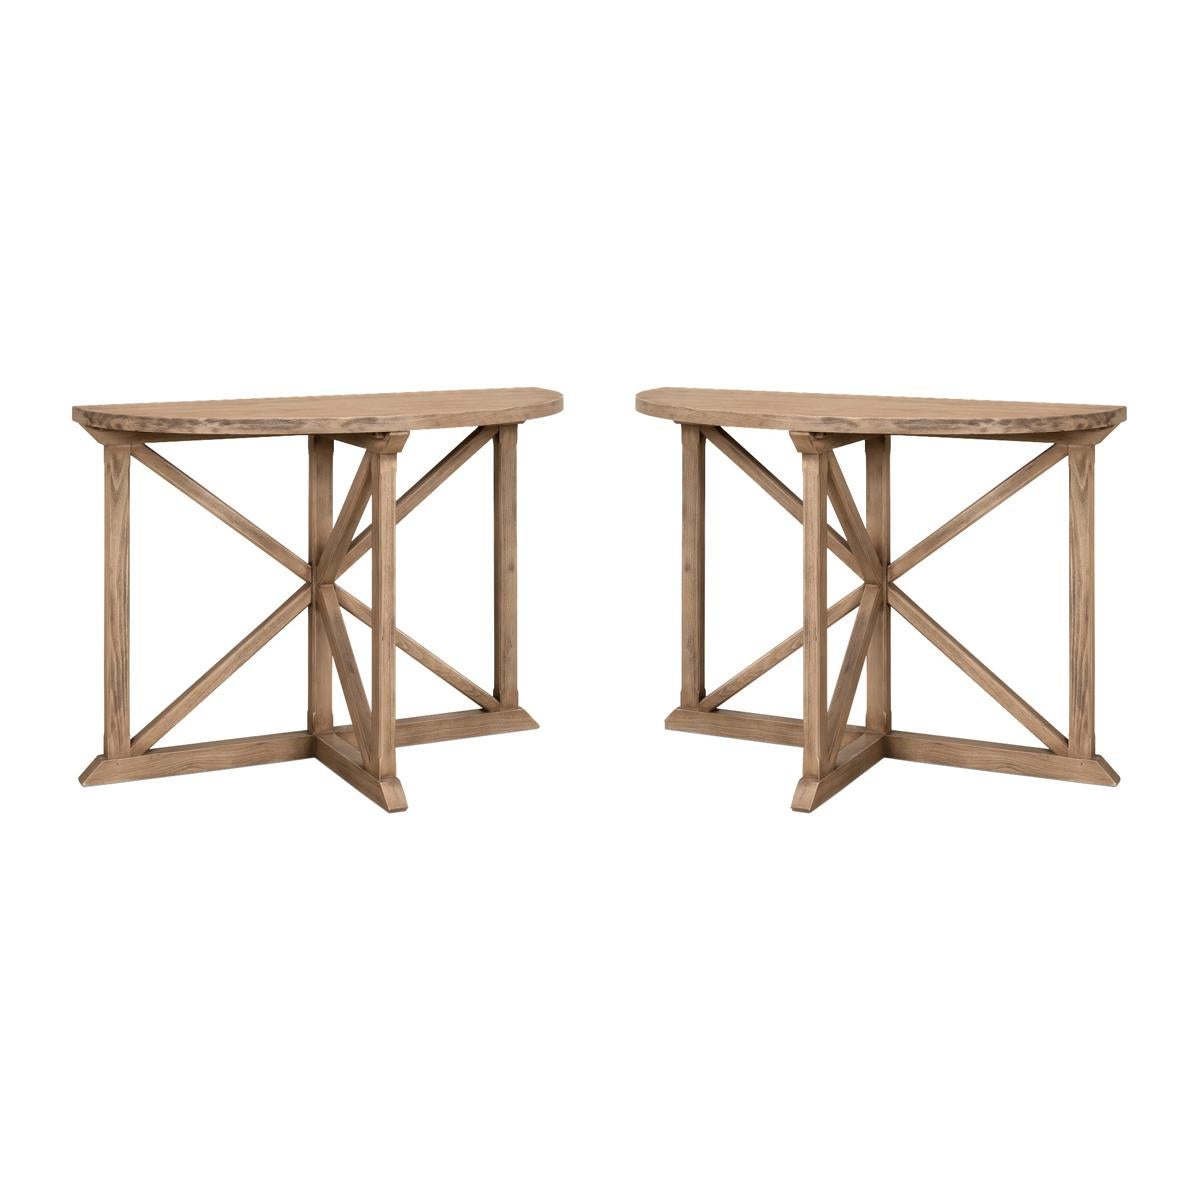 La table console Vineyard Demilune est une pièce étonnante qui apporte une touche de nature dans votre maison. Fabriqué en pin, il a un aspect naturel et rustique qui réchauffera instantanément n'importe quel espace. La finition en pin écaillé lui